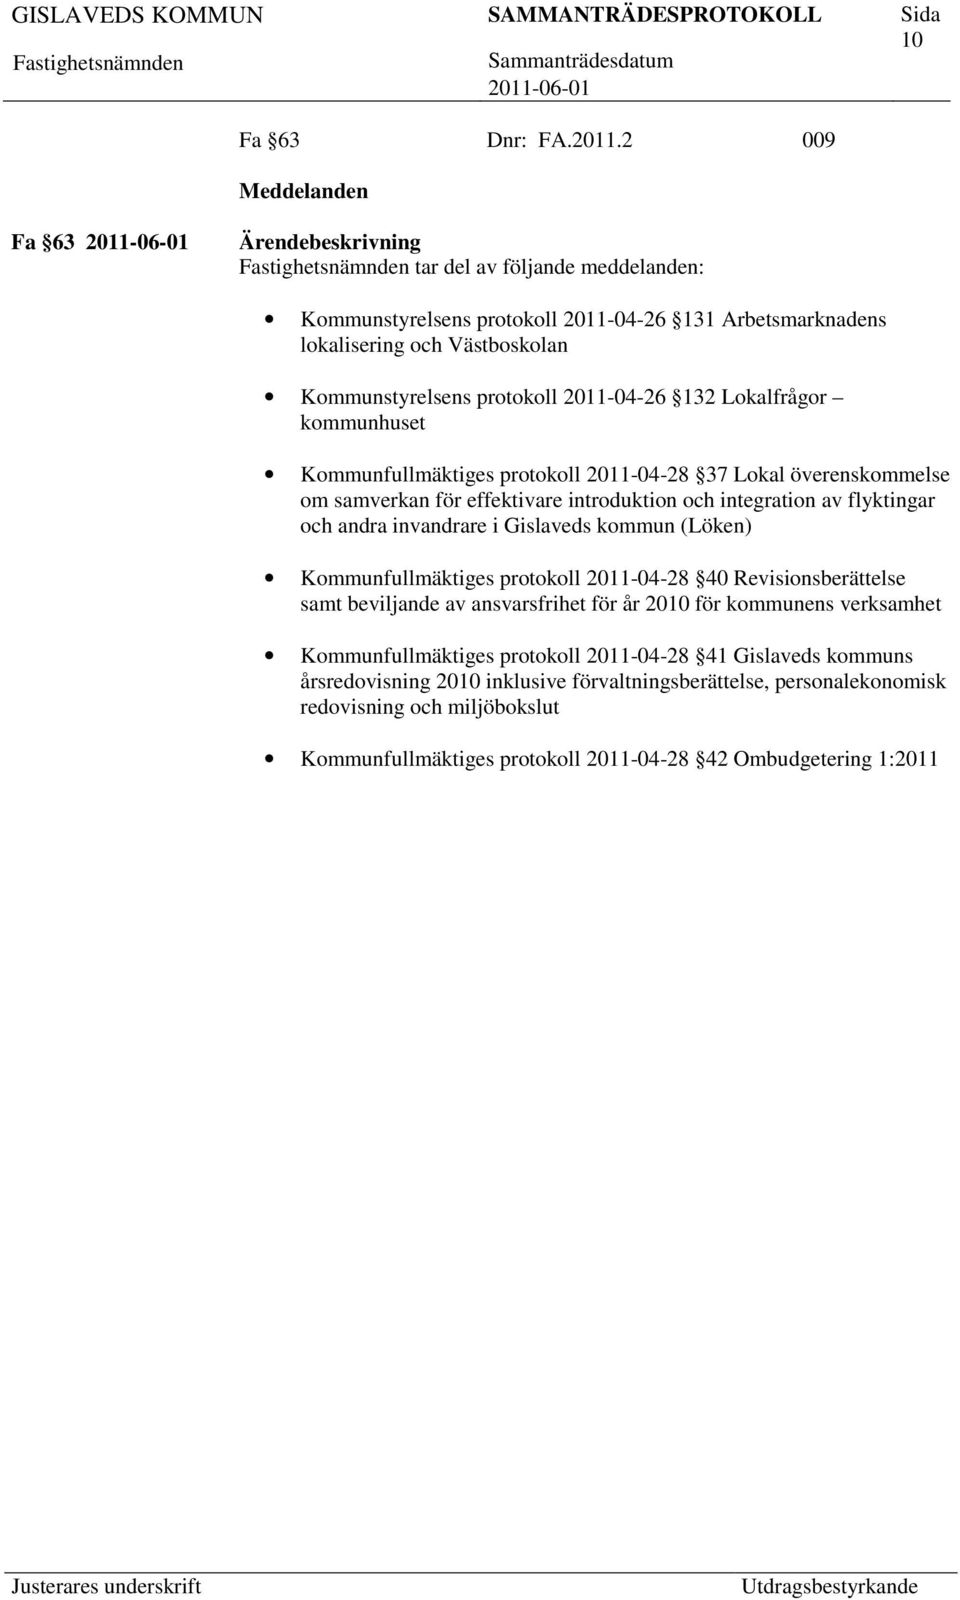 Lokalfrågor kommunhuset Kommunfullmäktiges protokoll 2011-04-28 37 Lokal överenskommelse om samverkan för effektivare introduktion och integration av flyktingar och andra invandrare i Gislaveds